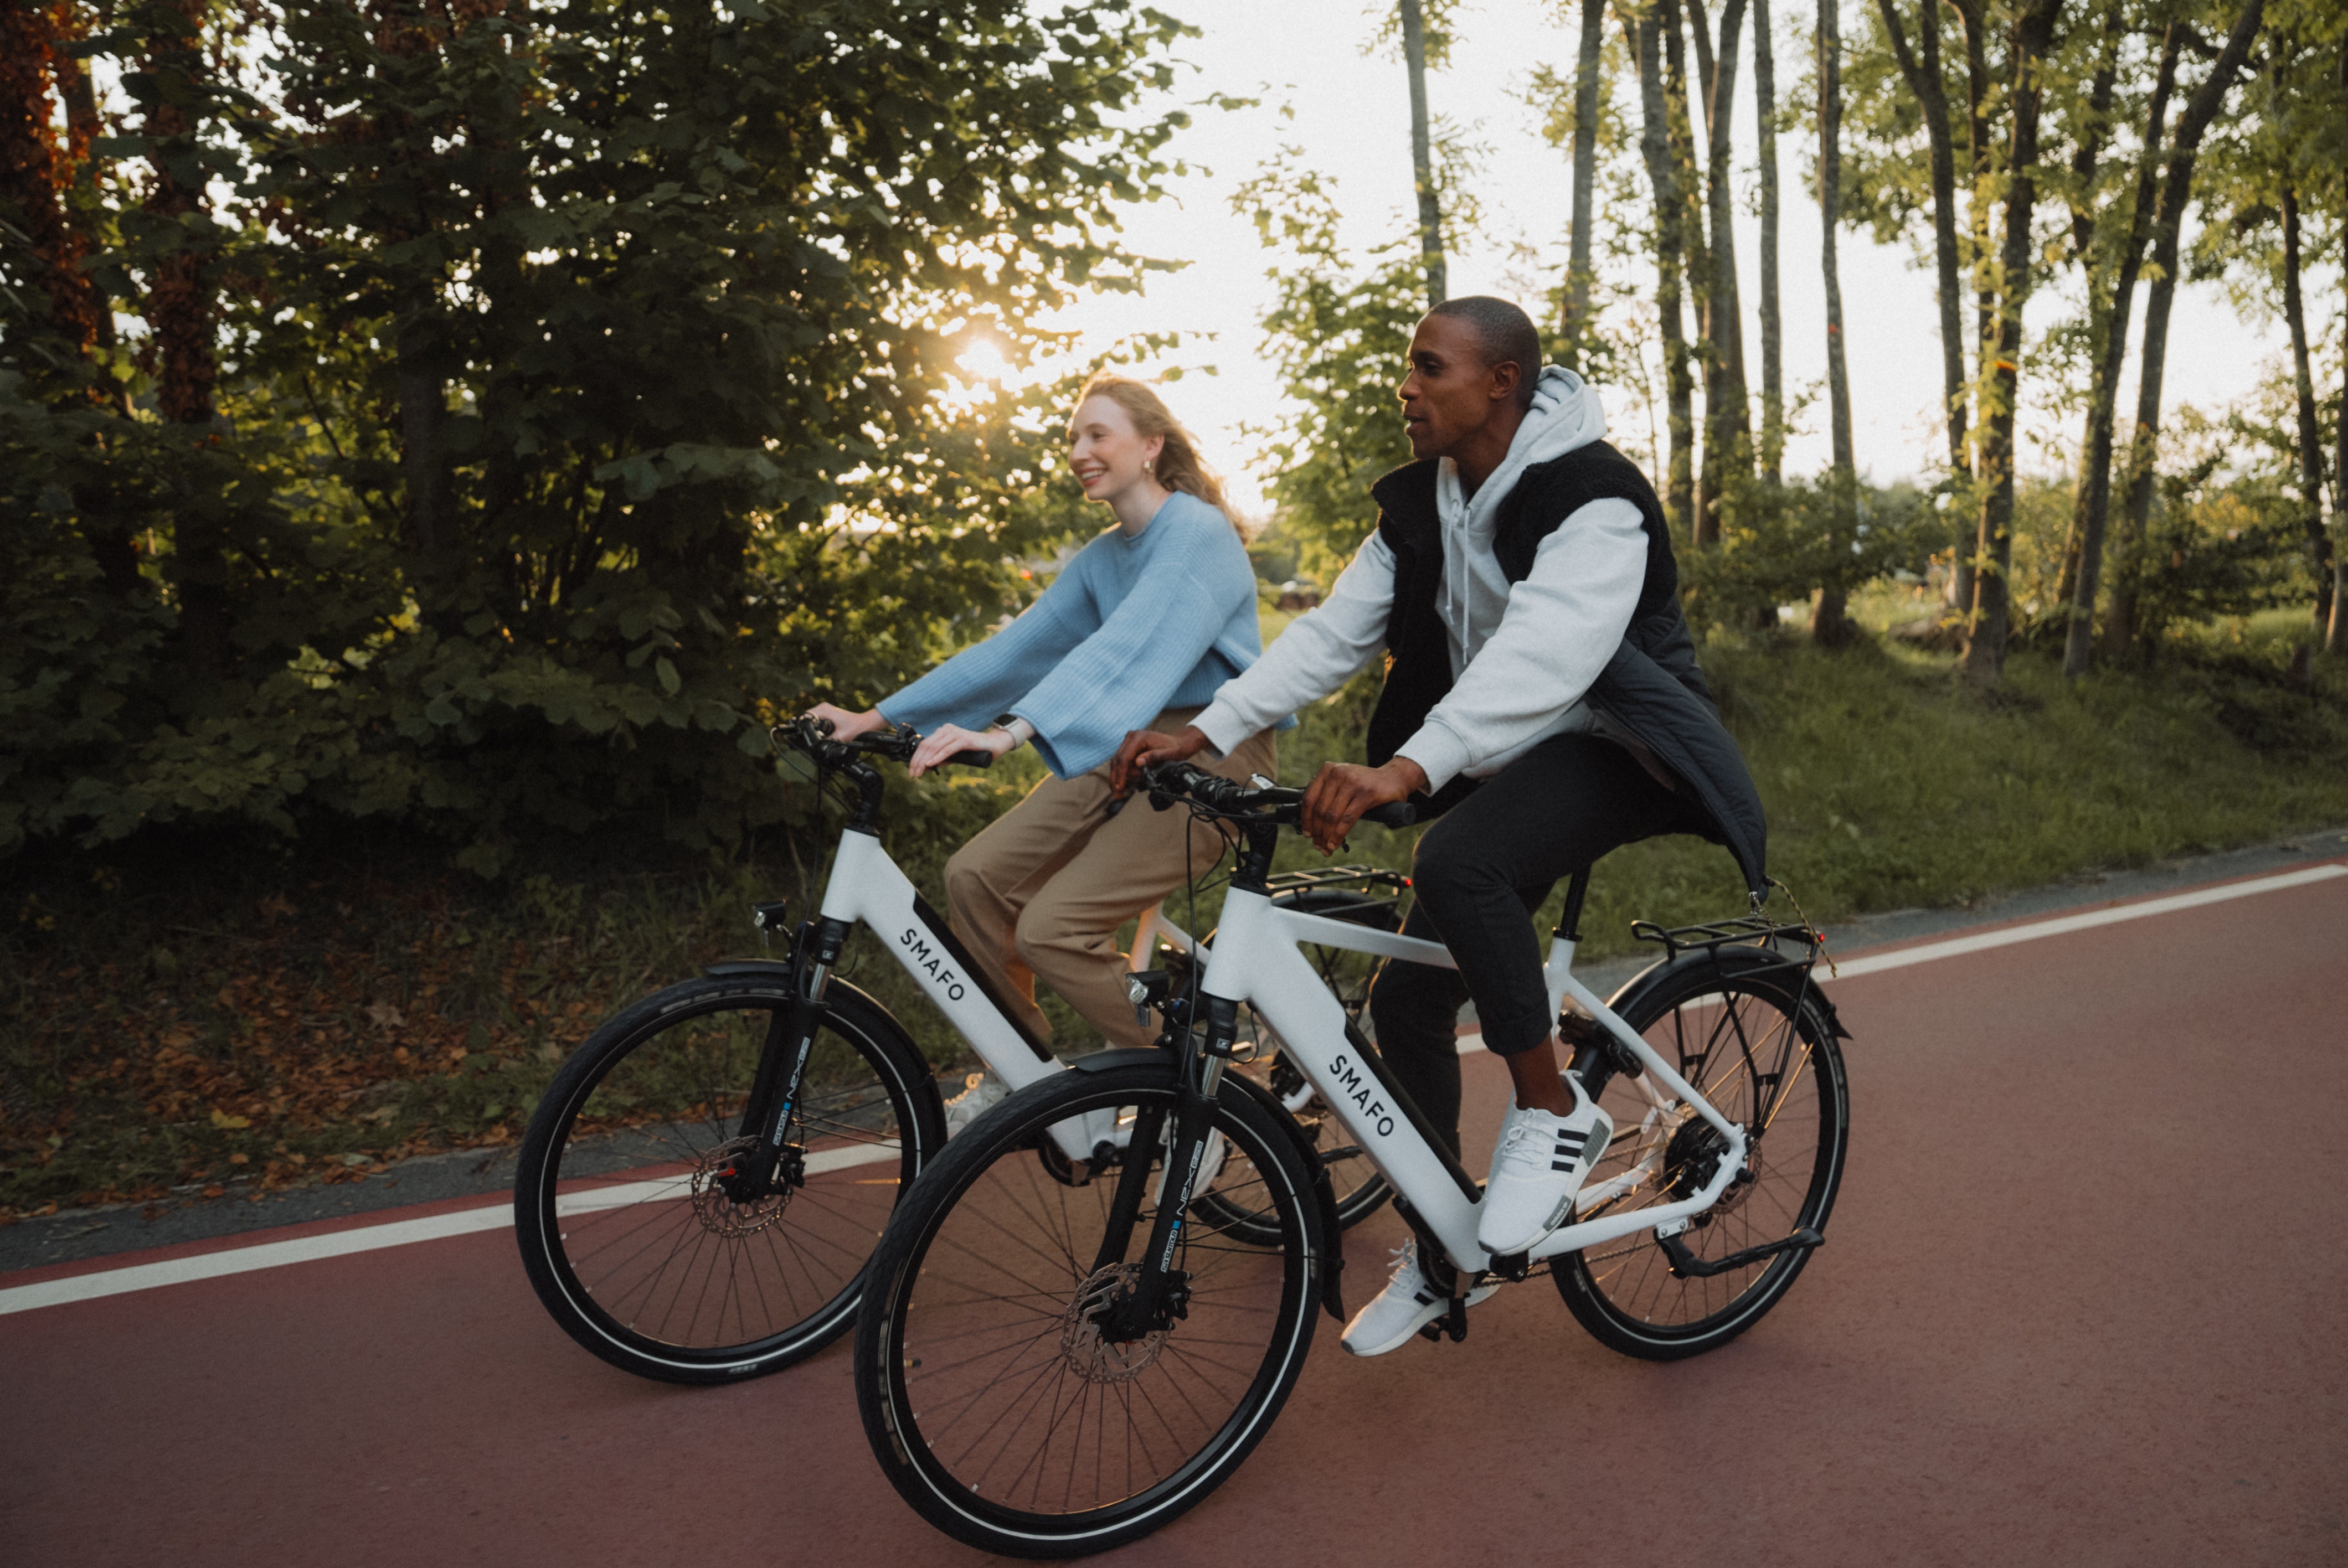 SMAFO stellt mit SMAFO 4 neue Bikes für den sorgenfreien Einsatz im Alltag vor